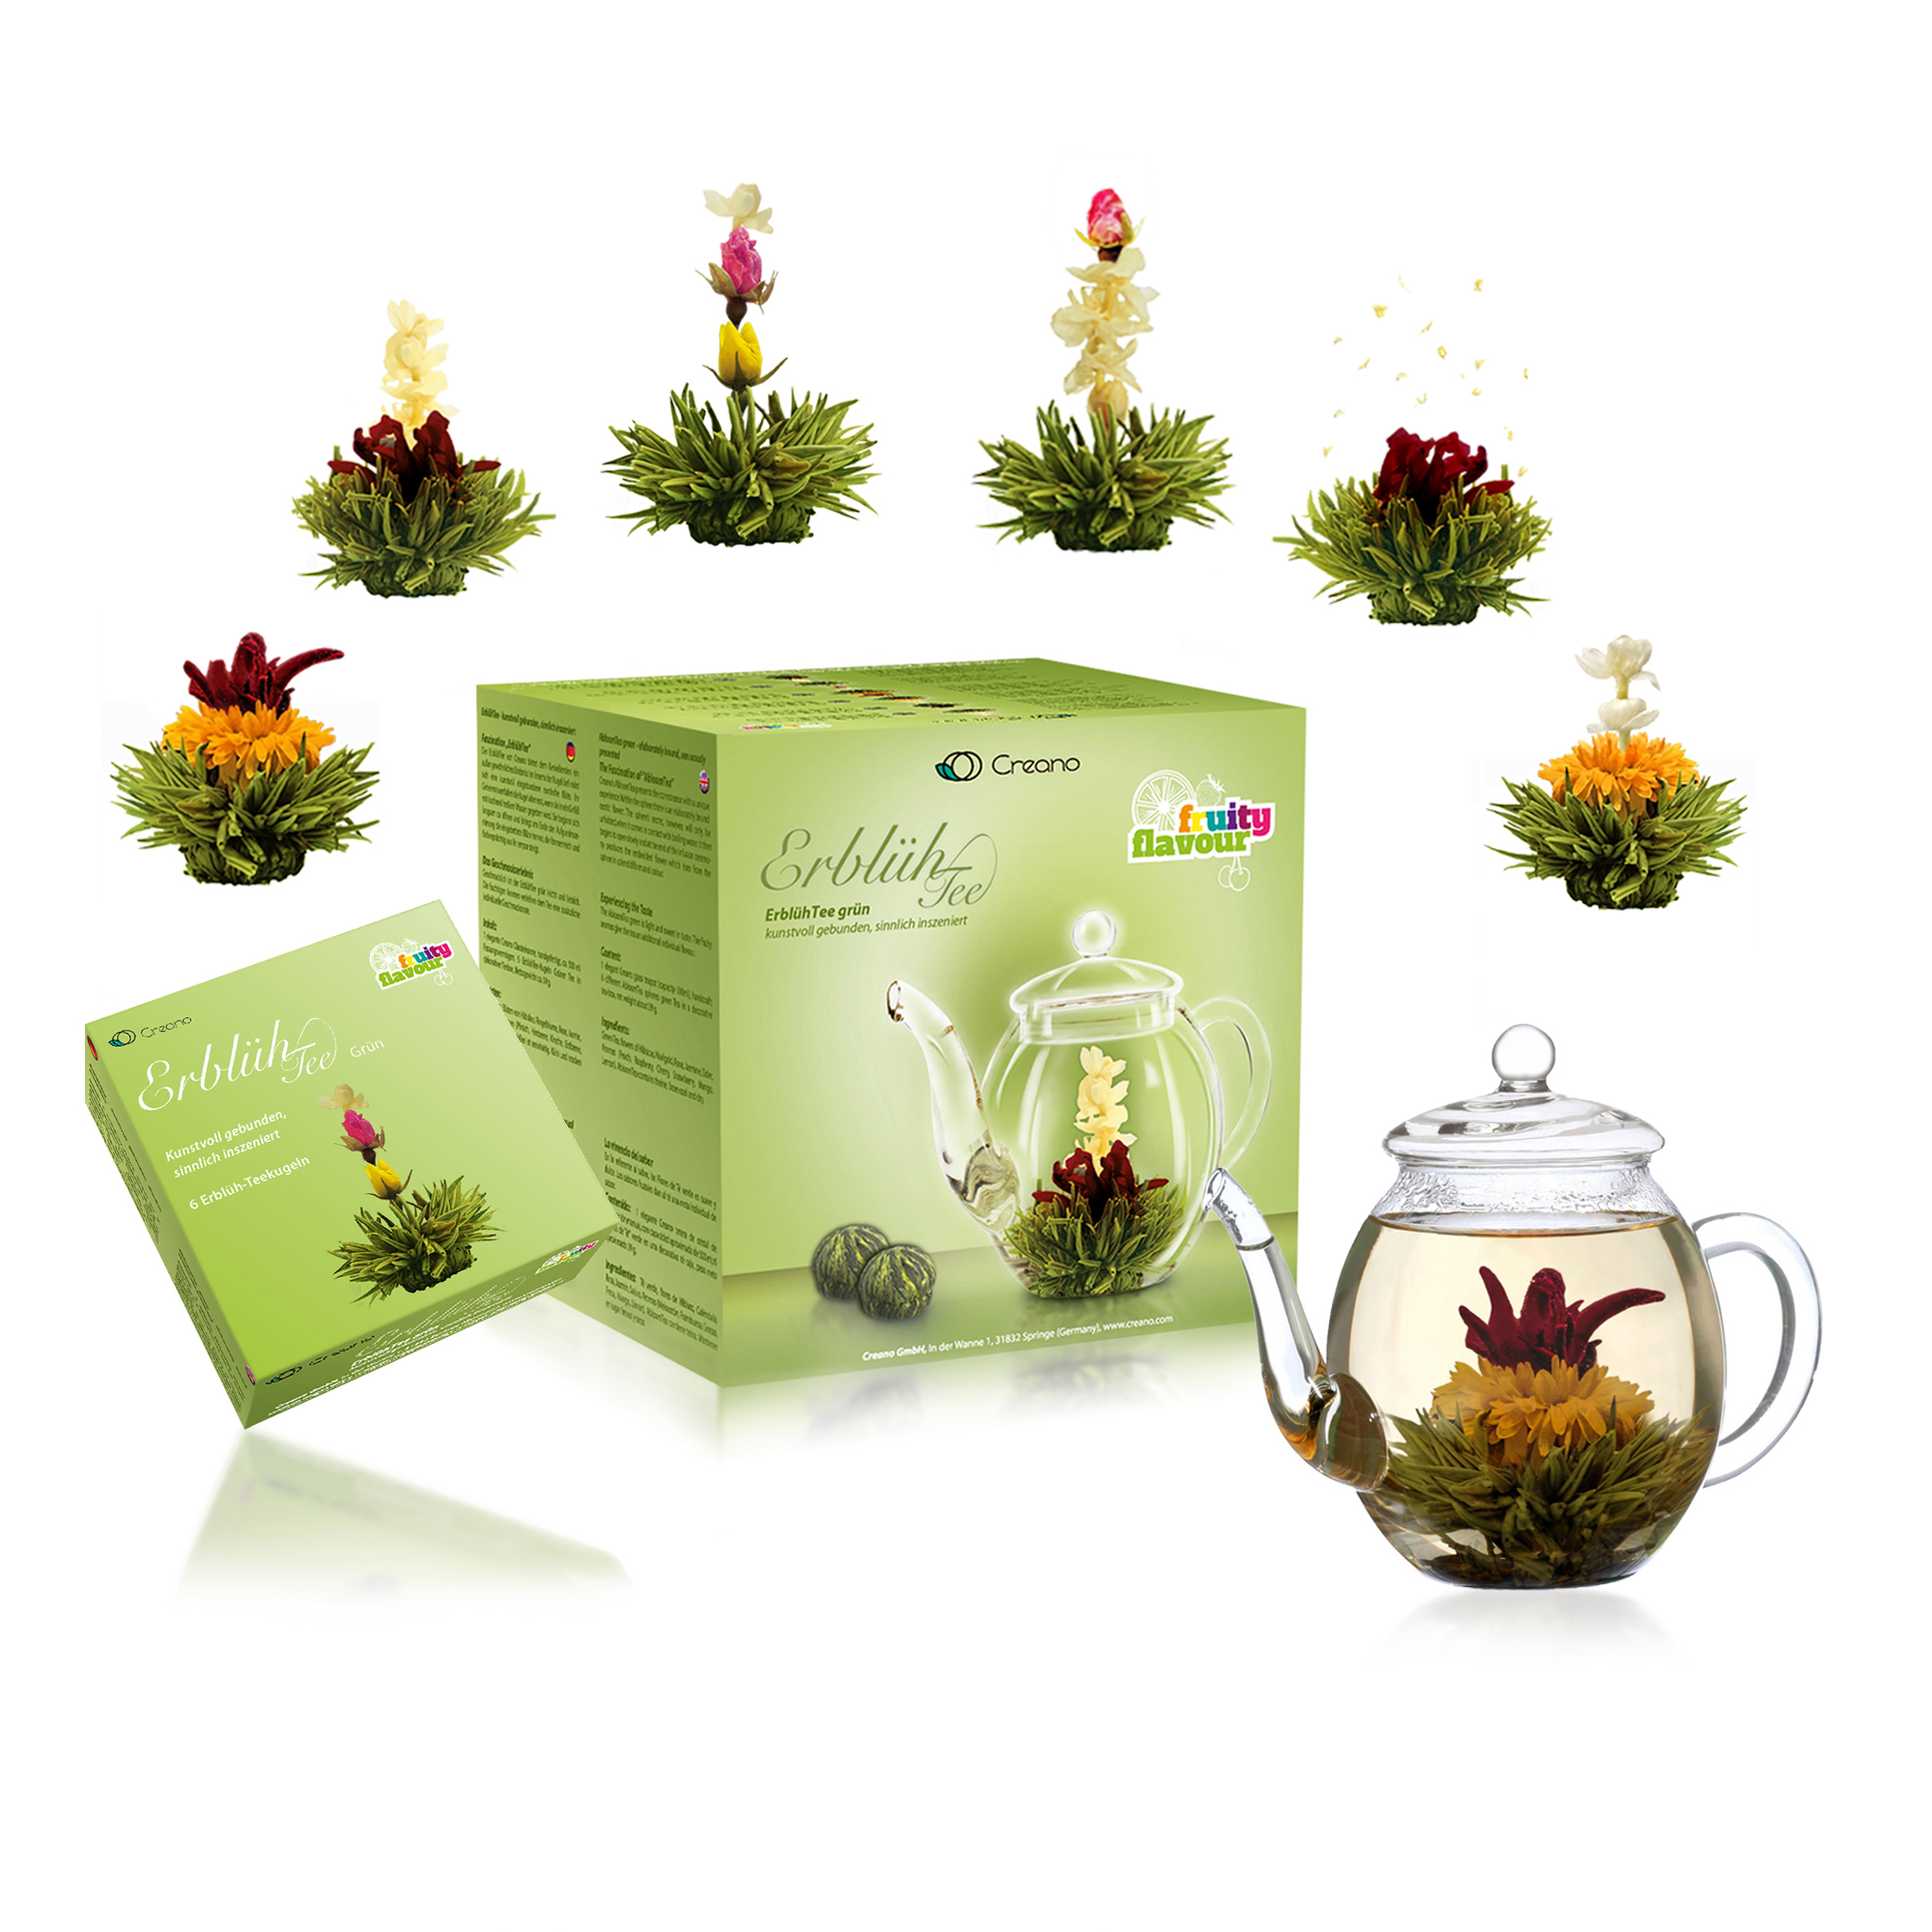 Creano "ErblühTee" Geschenkset Grüner Tee und Glaskanne, 0,5 l